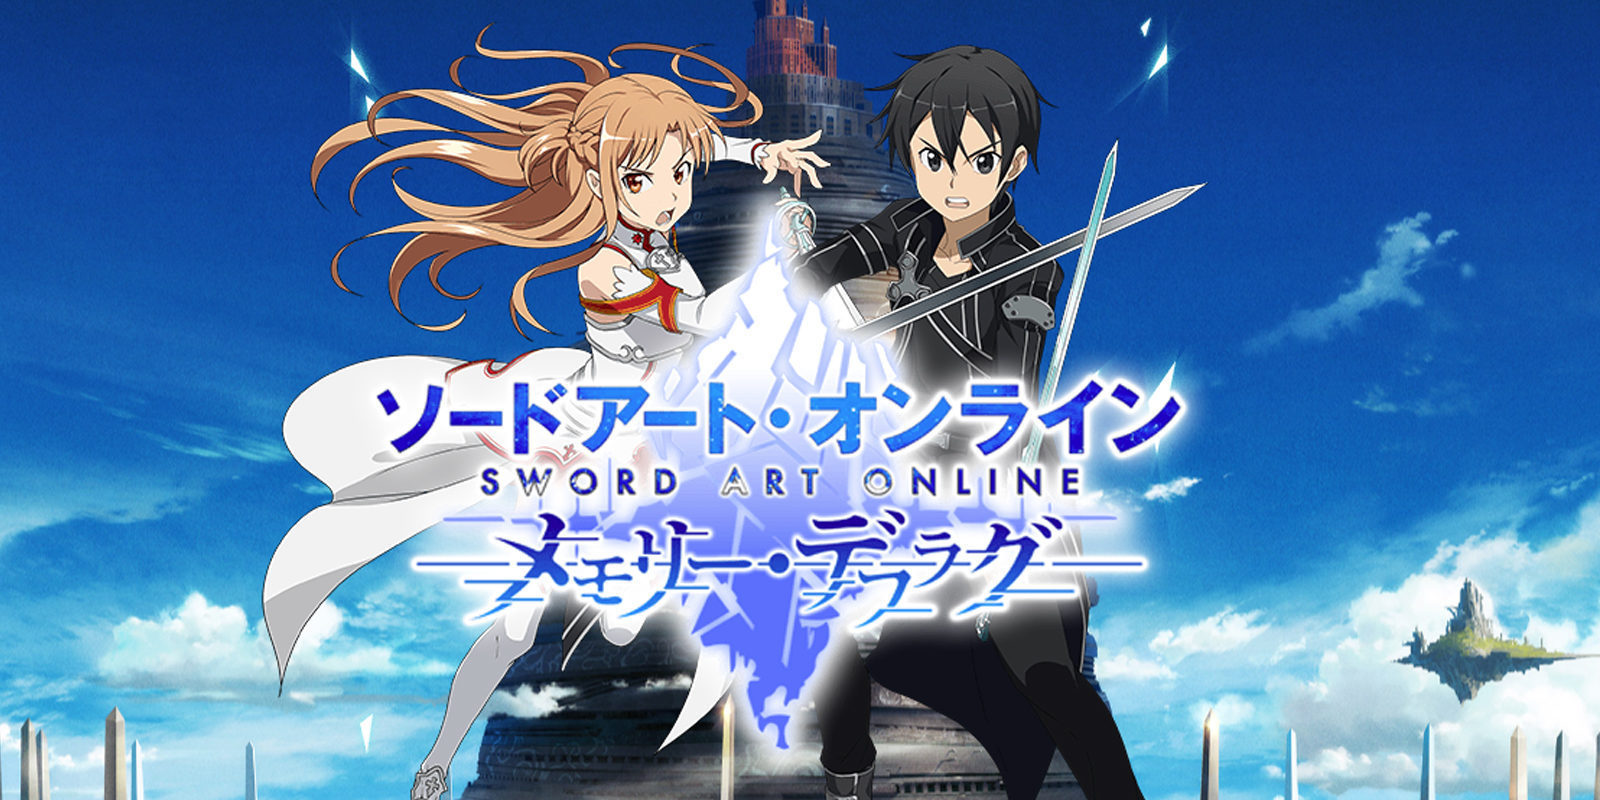 'Sword Art Online: Memory Defrag' próximamente disponible para iOS y Android